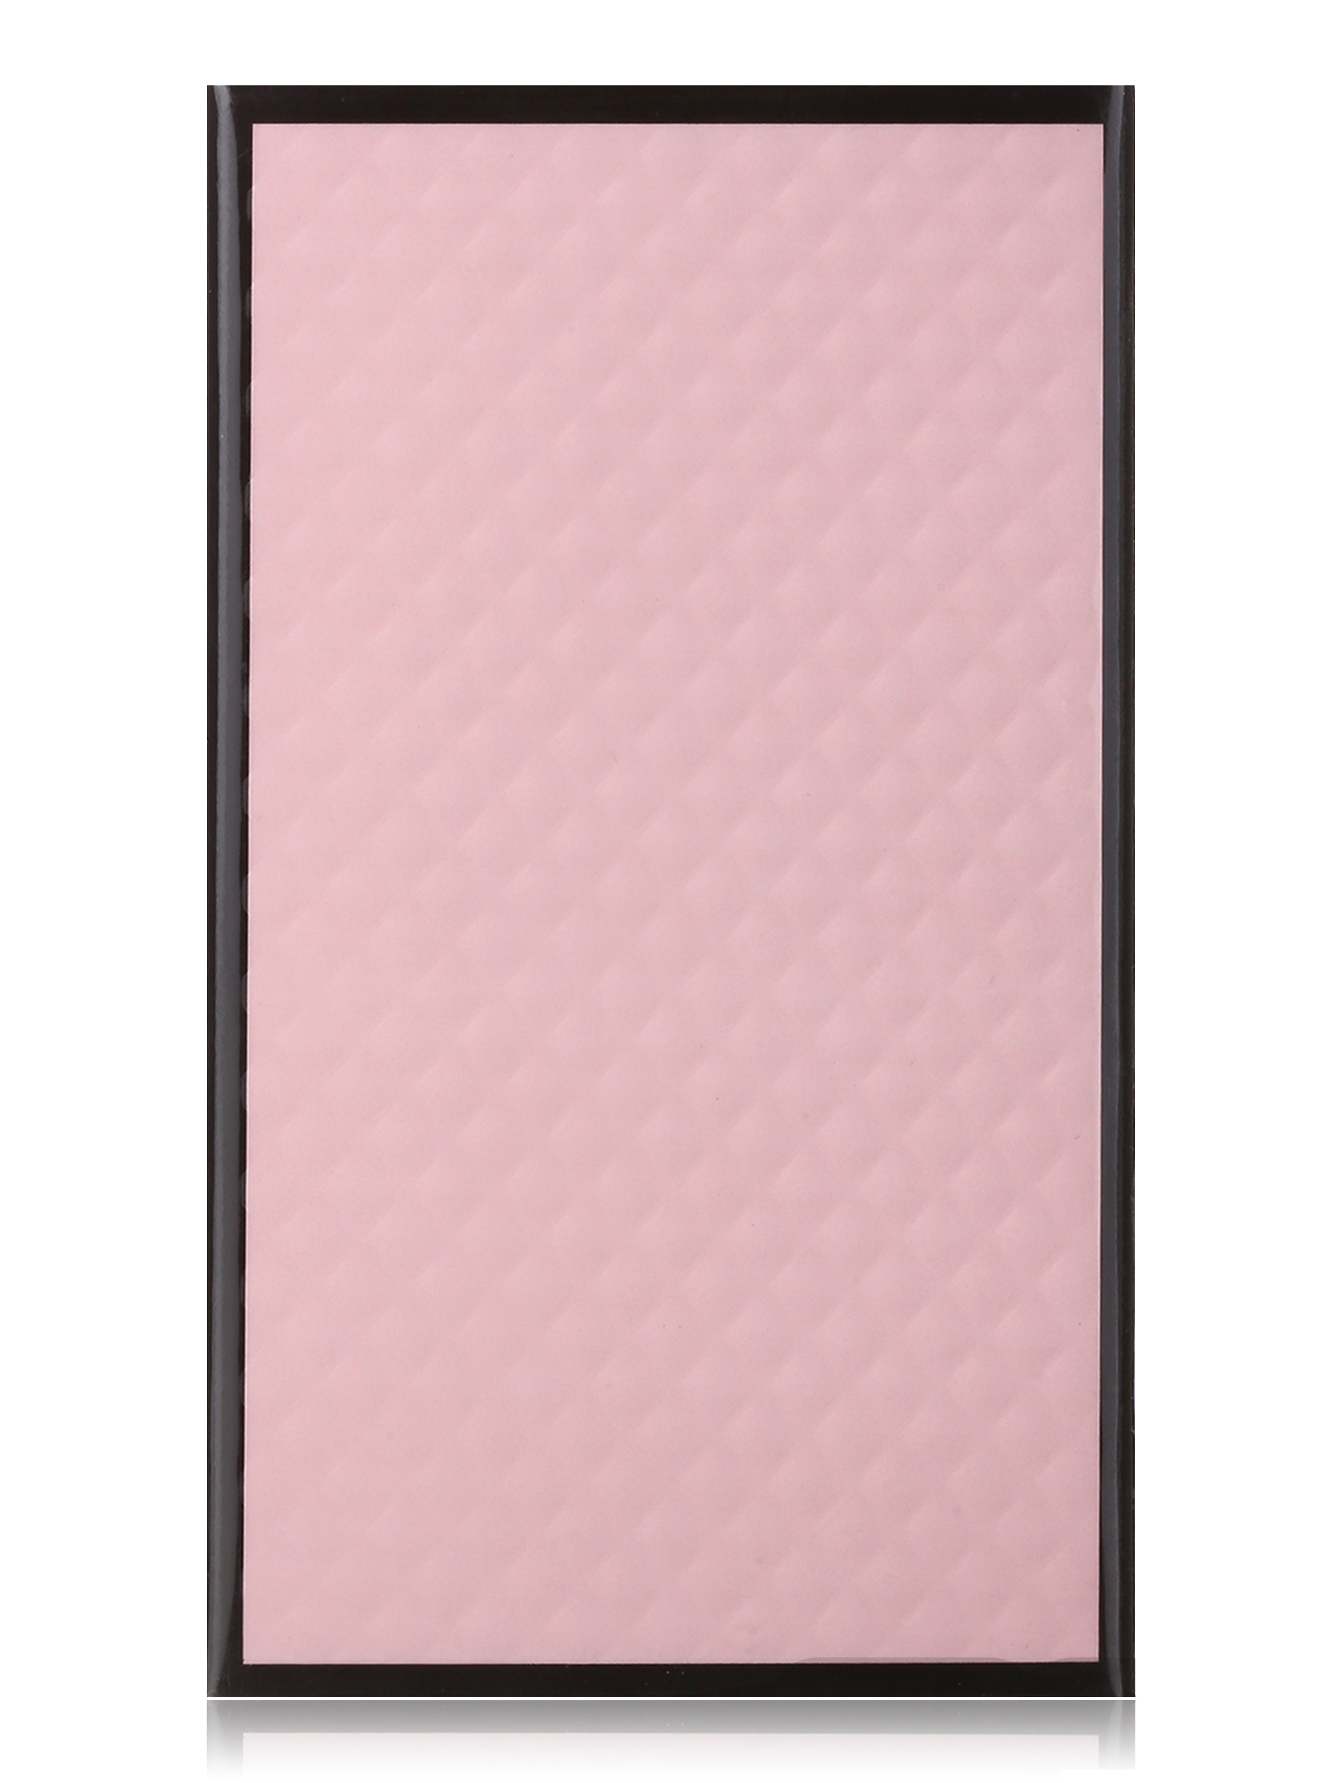  Парфюмерная вода - Fatale pink, 30ml - Модель Верх-Низ